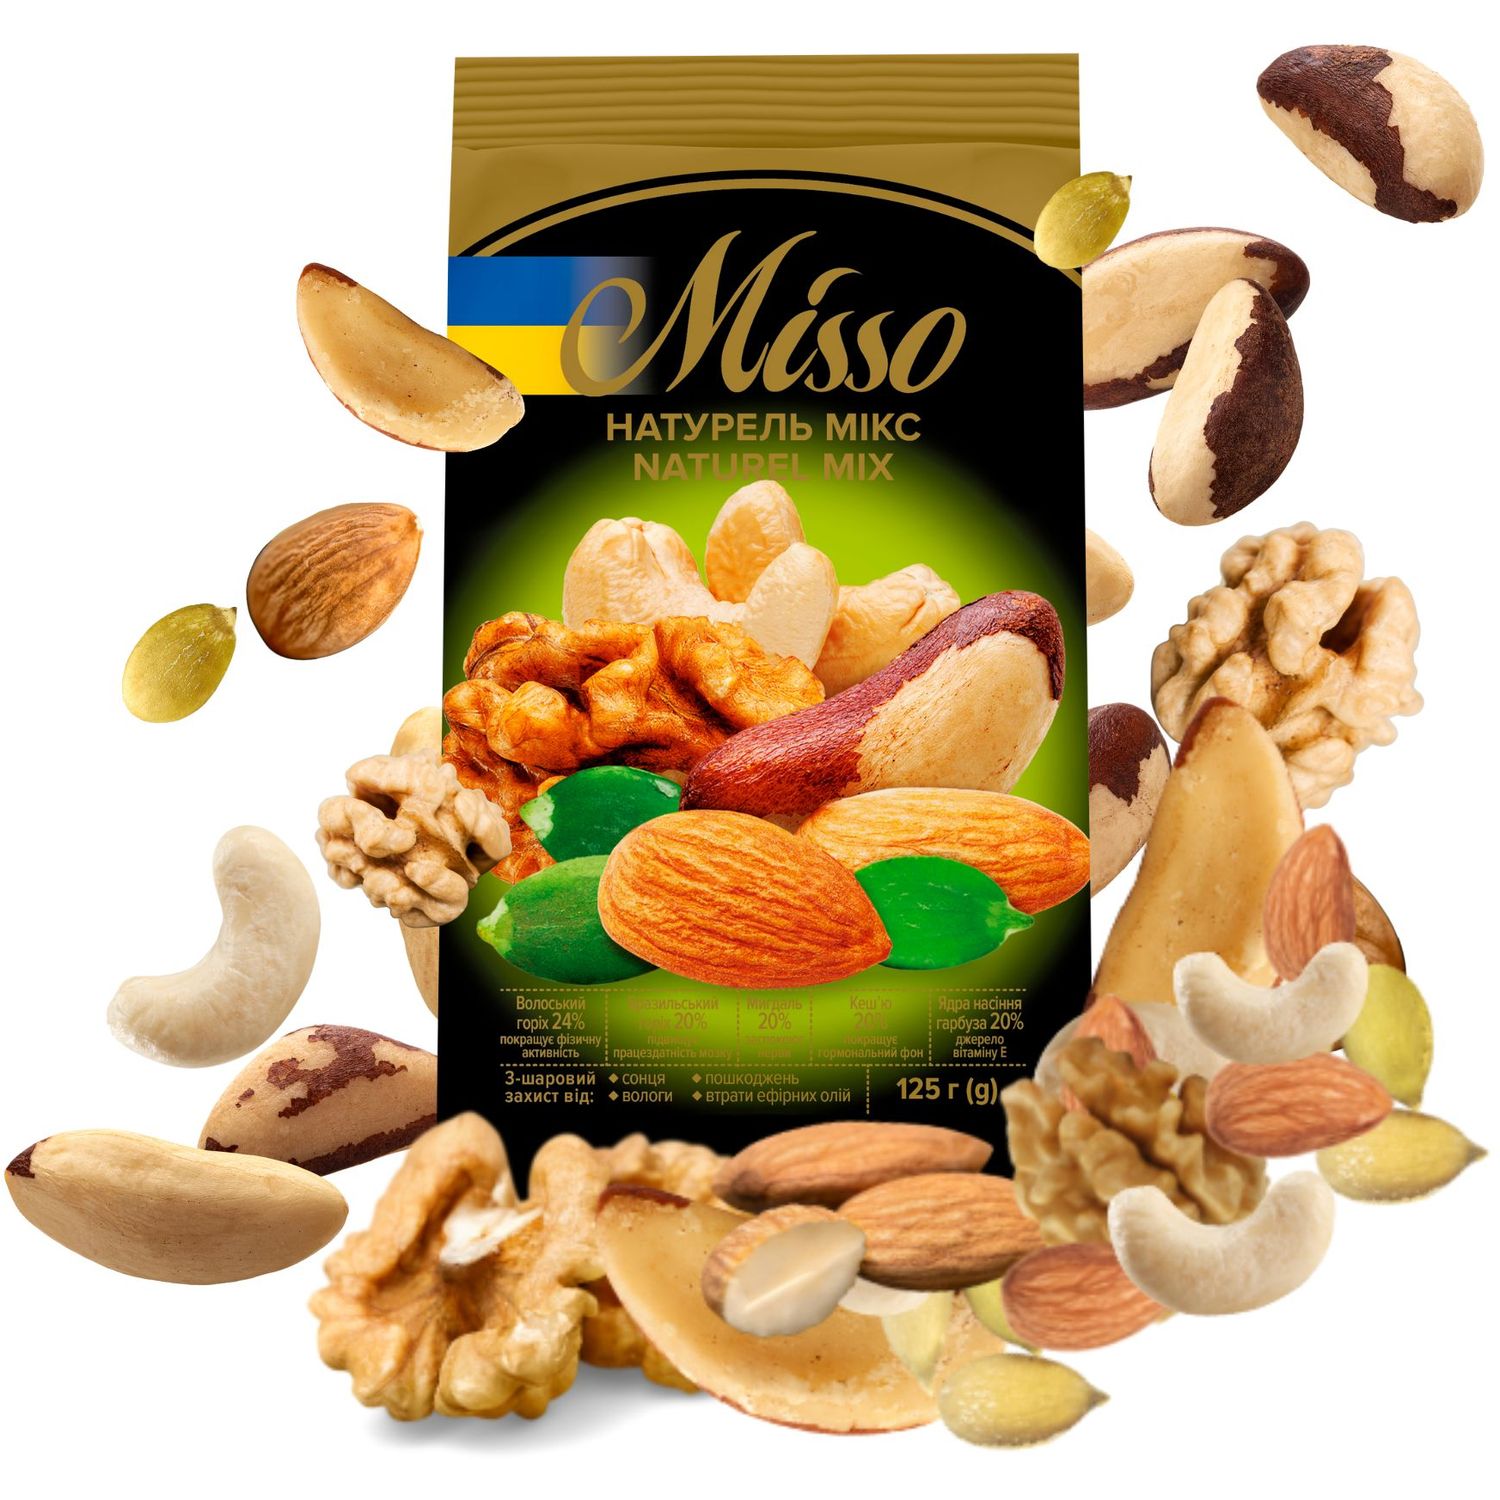 Ассорти сушеных орехов Misso Naturel Mix 125 г - фото 2